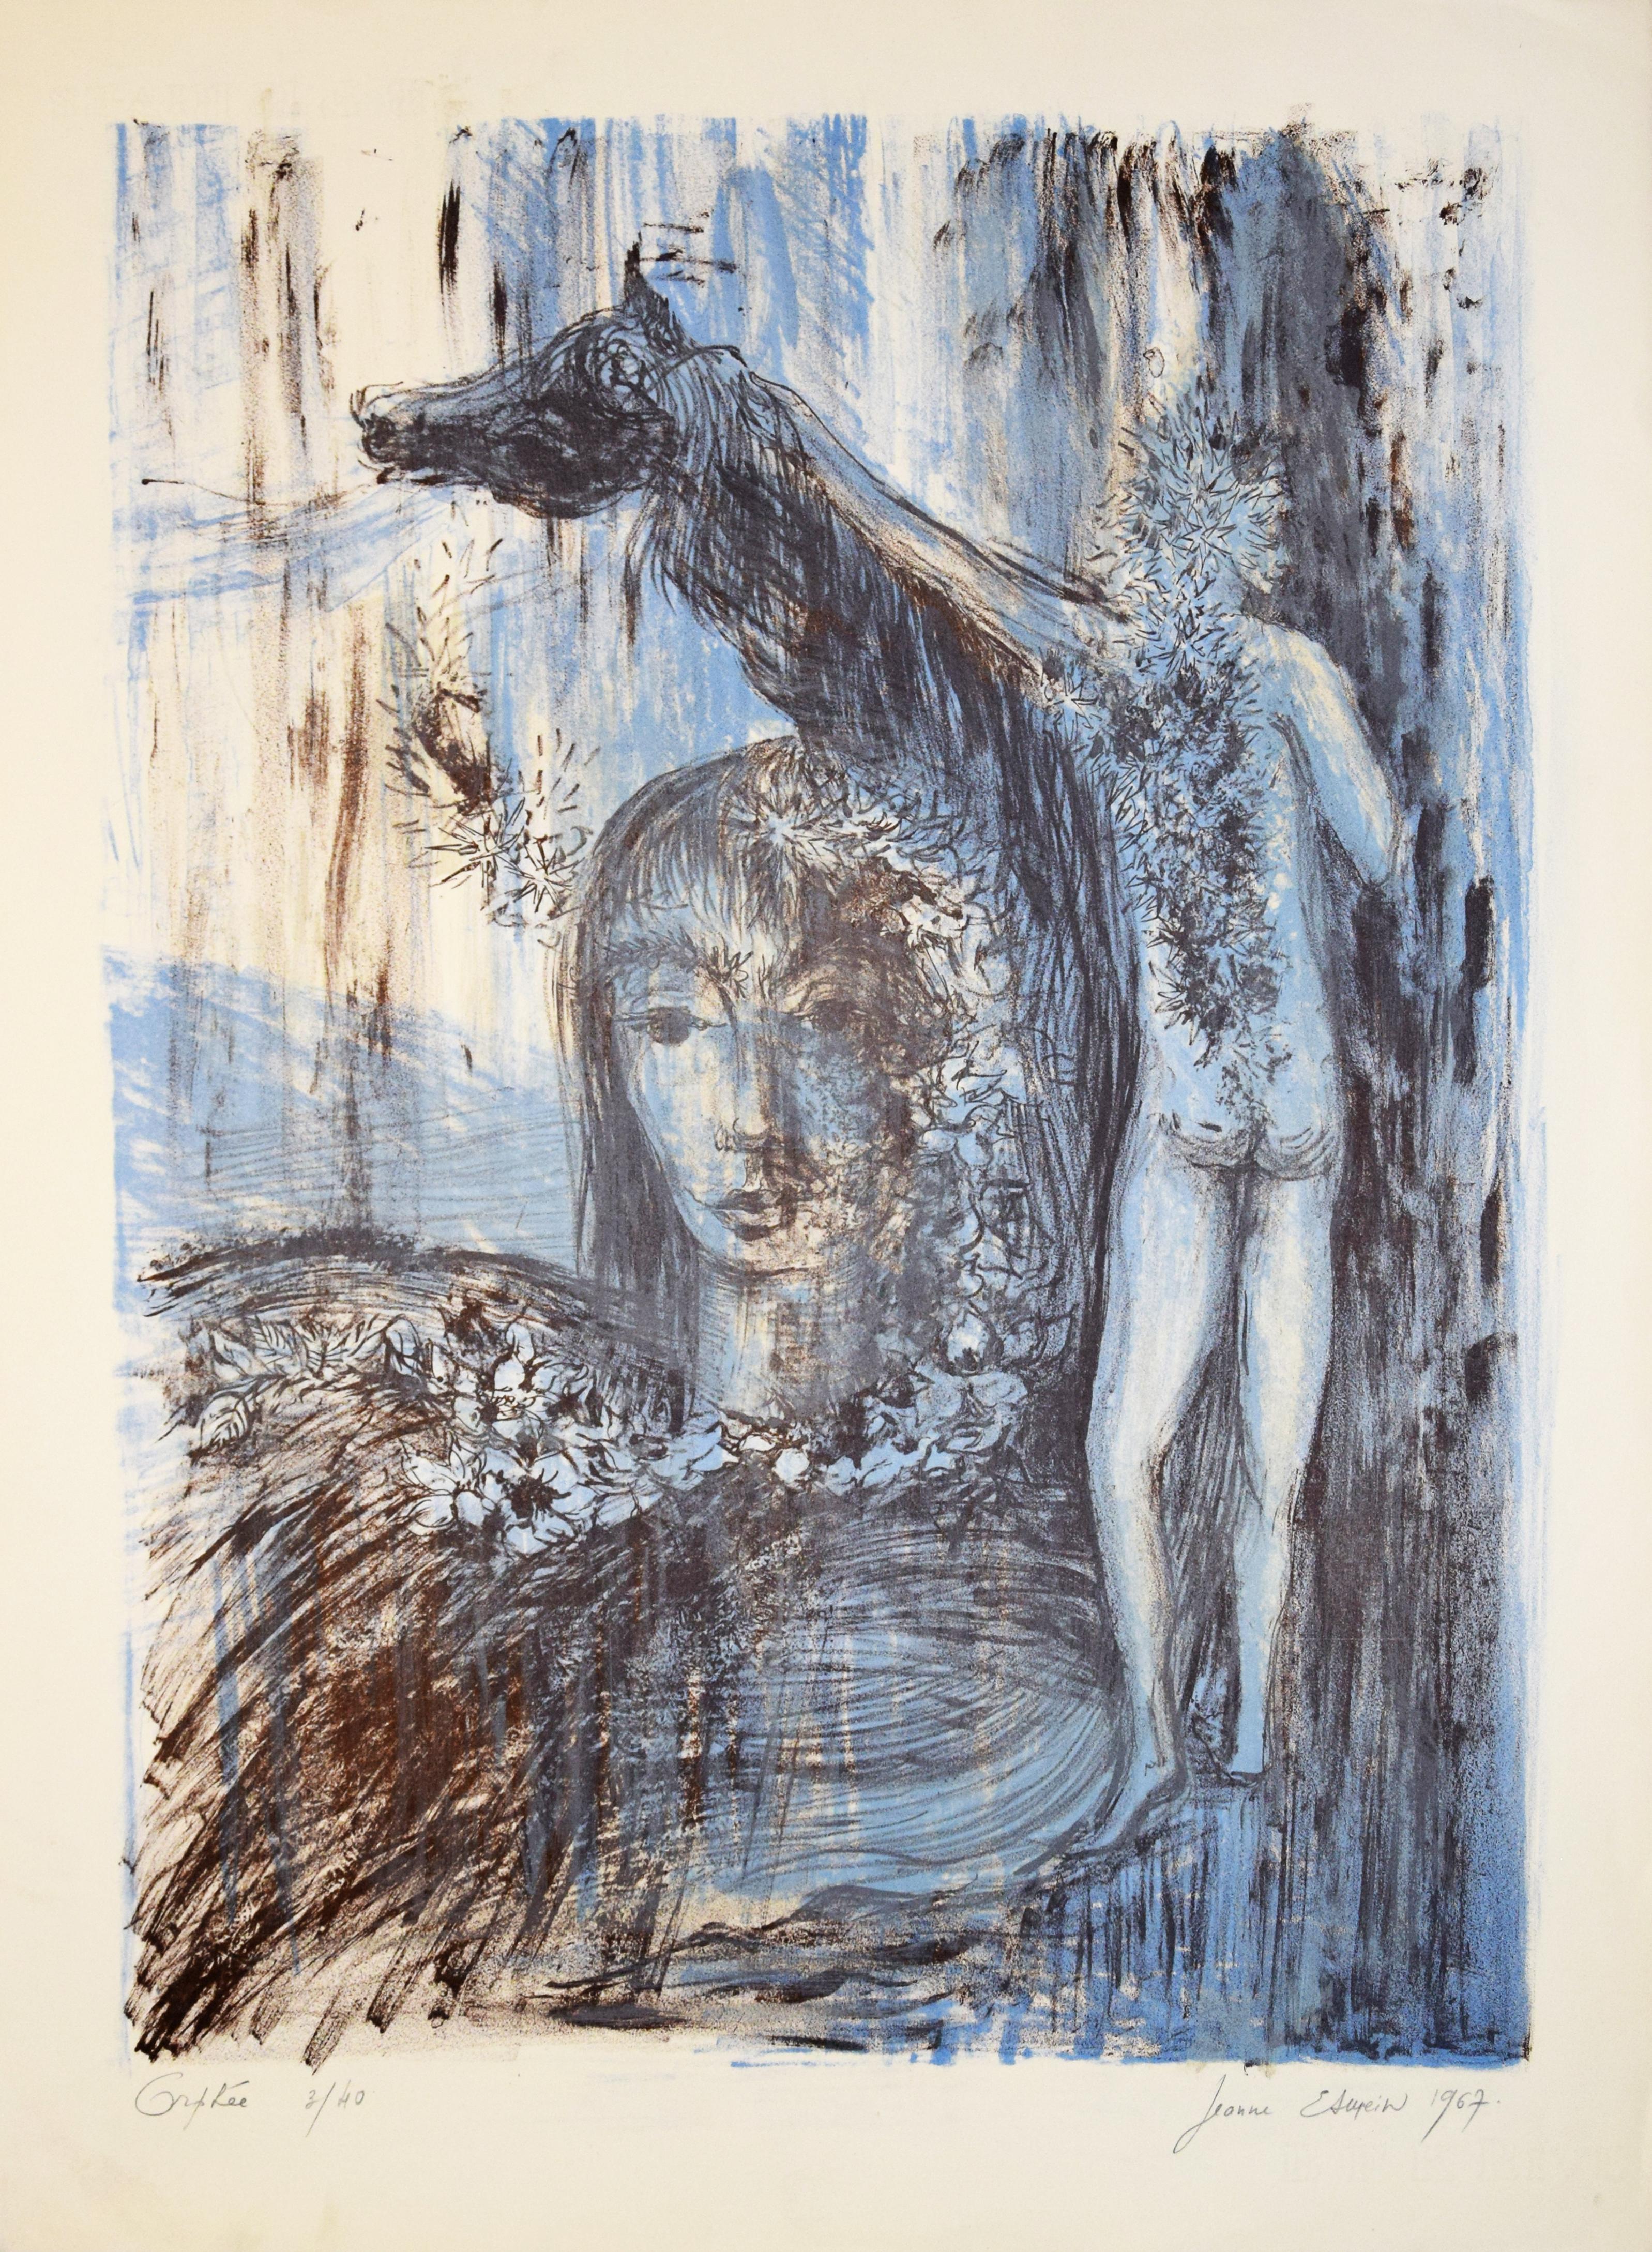 Orphée ist ein Originalkunstwerk von Jeanne Esmein aus dem Jahr 1967. Serigrafie auf Papier. 

Rechts unten mit Bleistift vom Künstler handsigniert und datiert. Links unten mit Bleistift betitelt und nummeriert. Auflage: 40 Exemplare.

Sehr guter